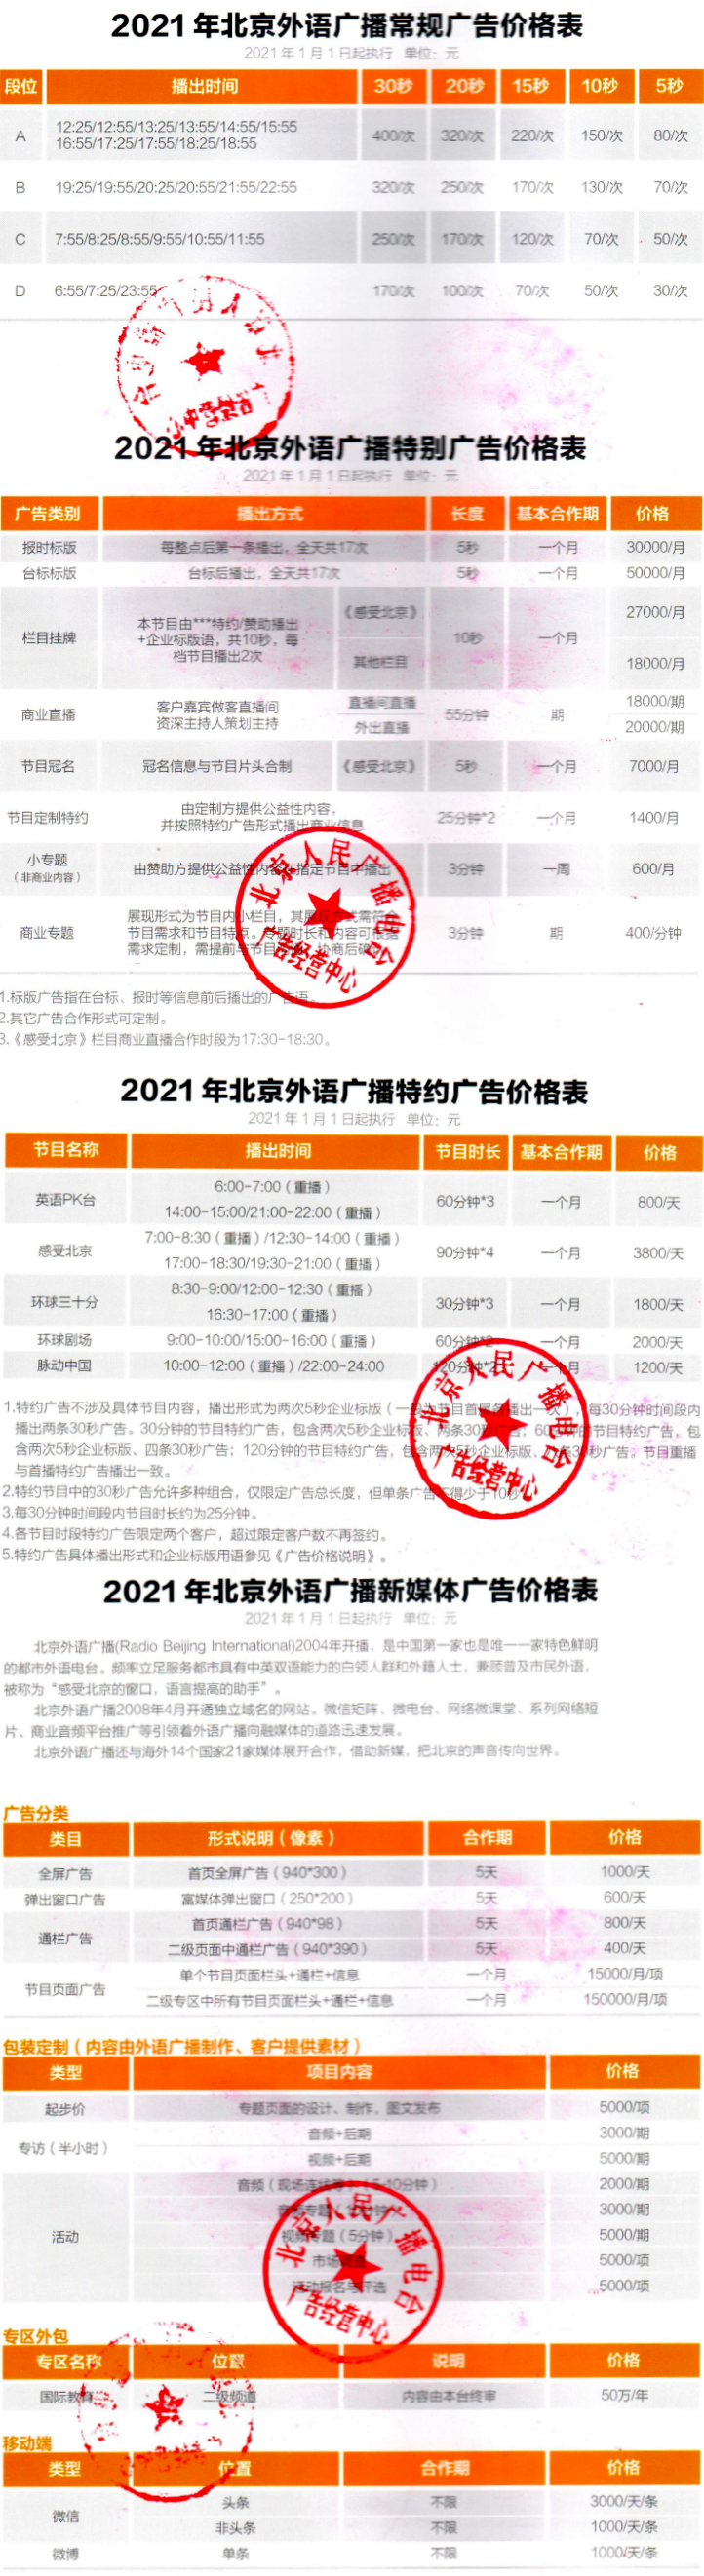 2021北京人民广播电台外语广播AM774广告报价表.jpg